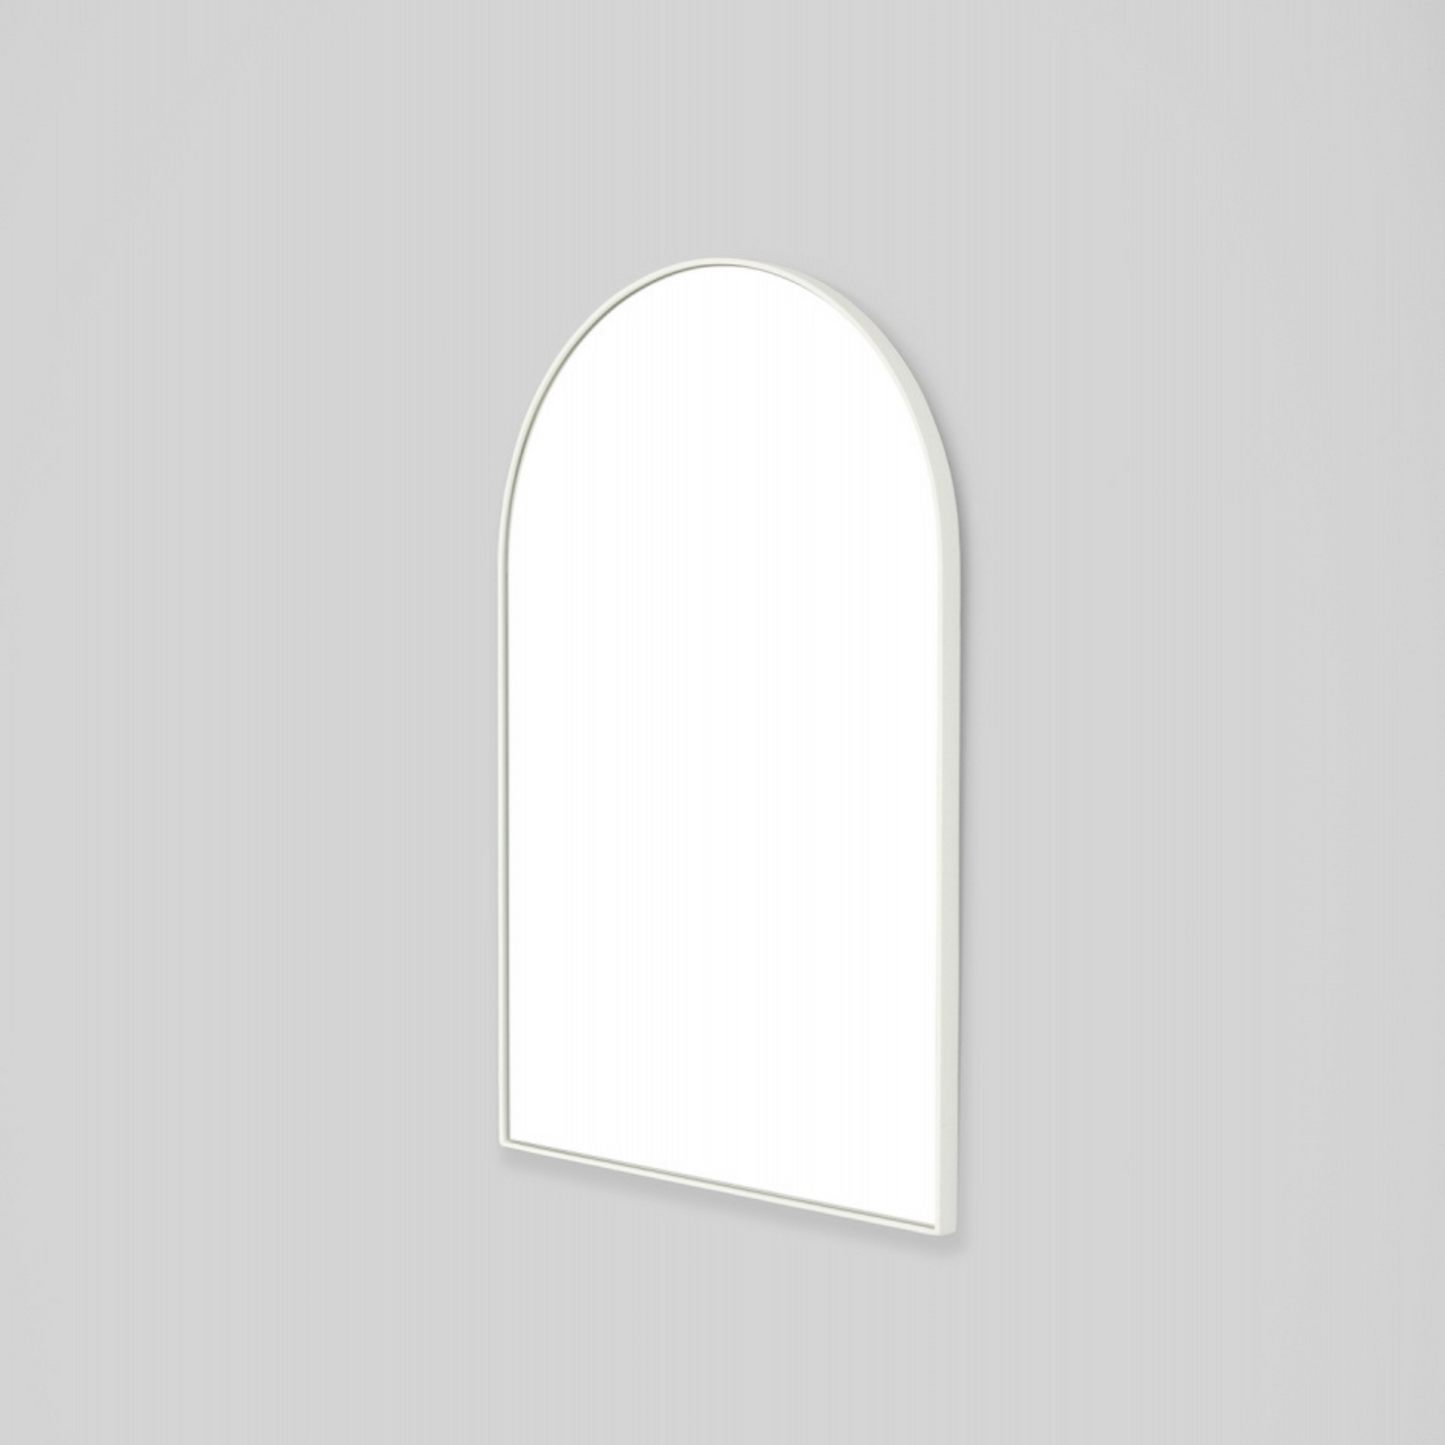 Bjorn Arch Mirror 55cm x 85cm - Bright White